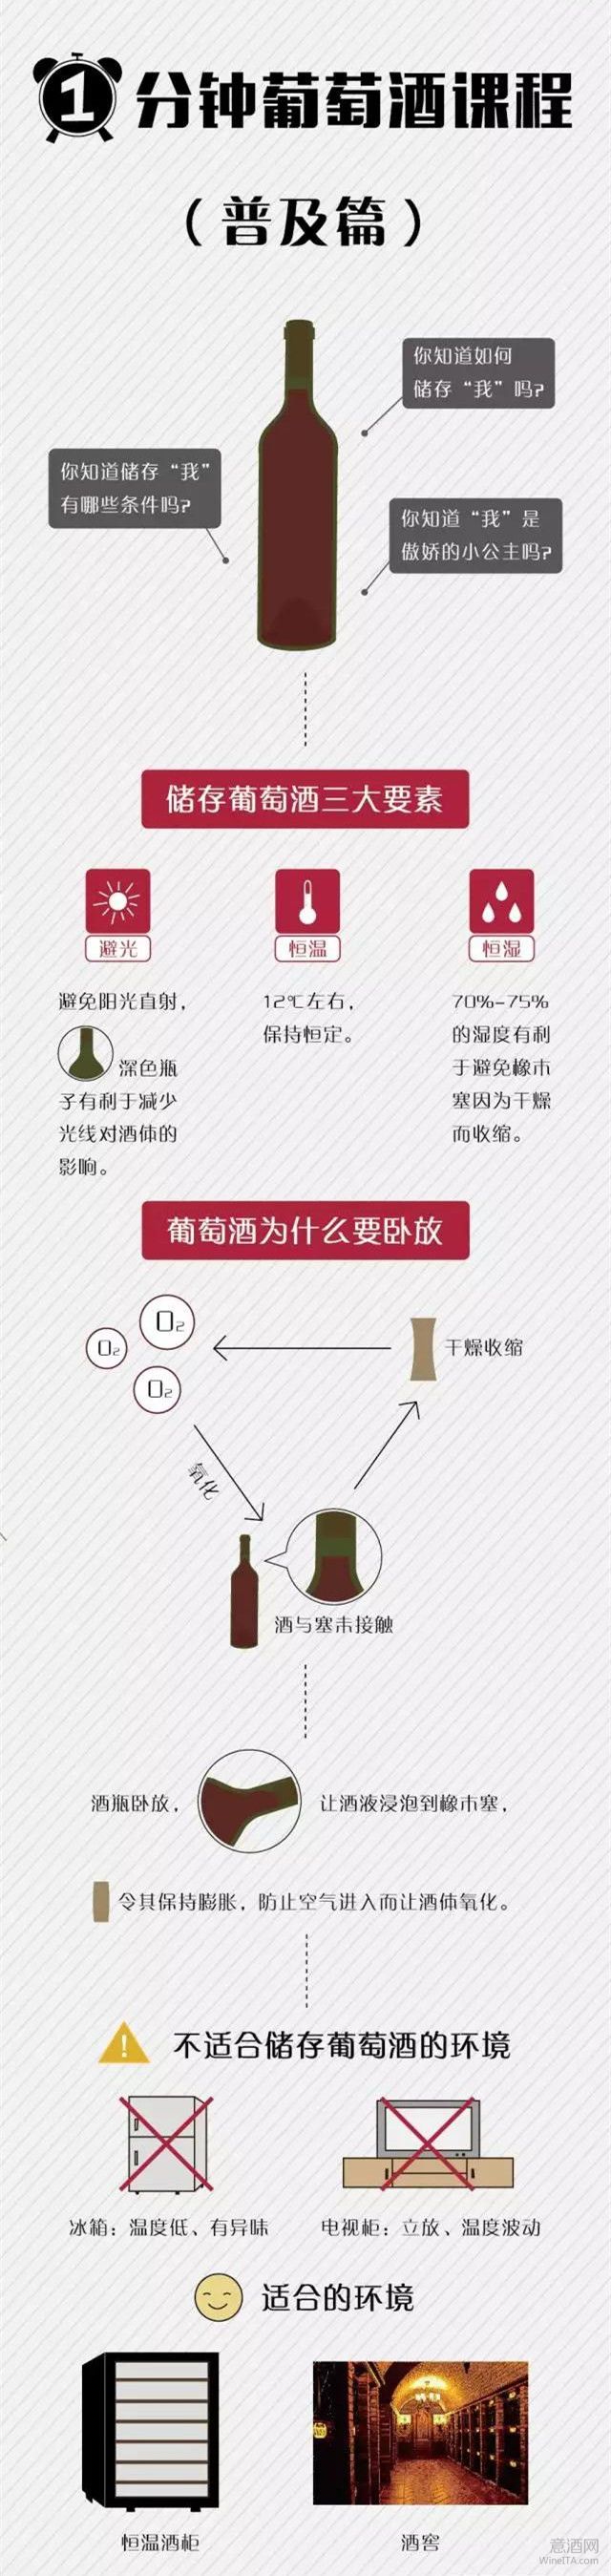 一张图教你如何保存葡萄酒